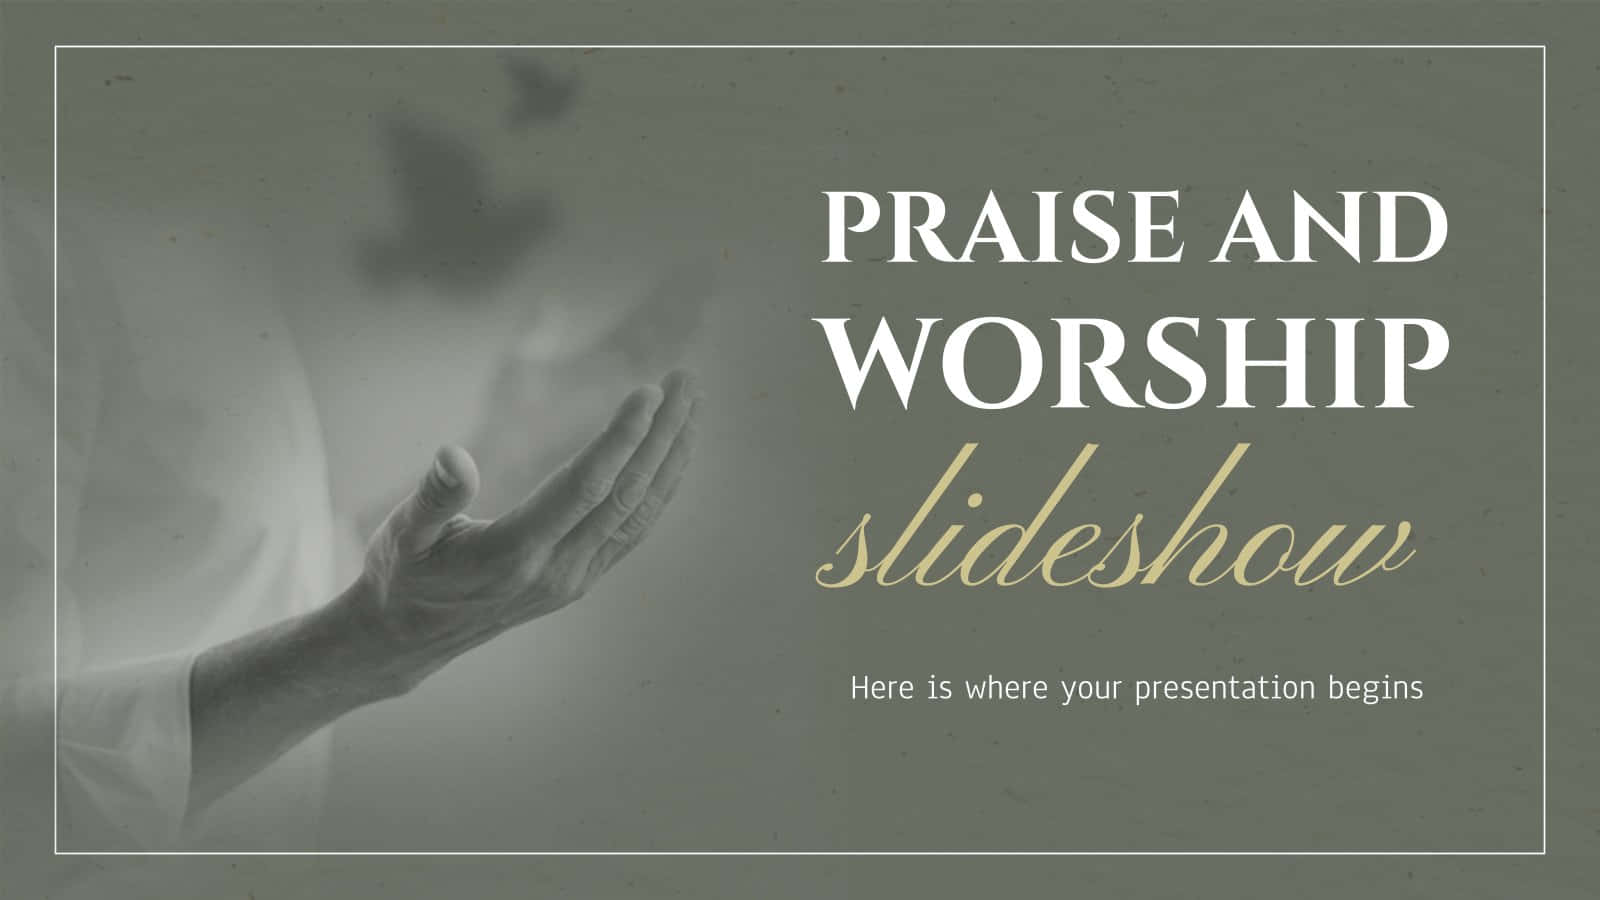 Worshipping God with Joy and Praise